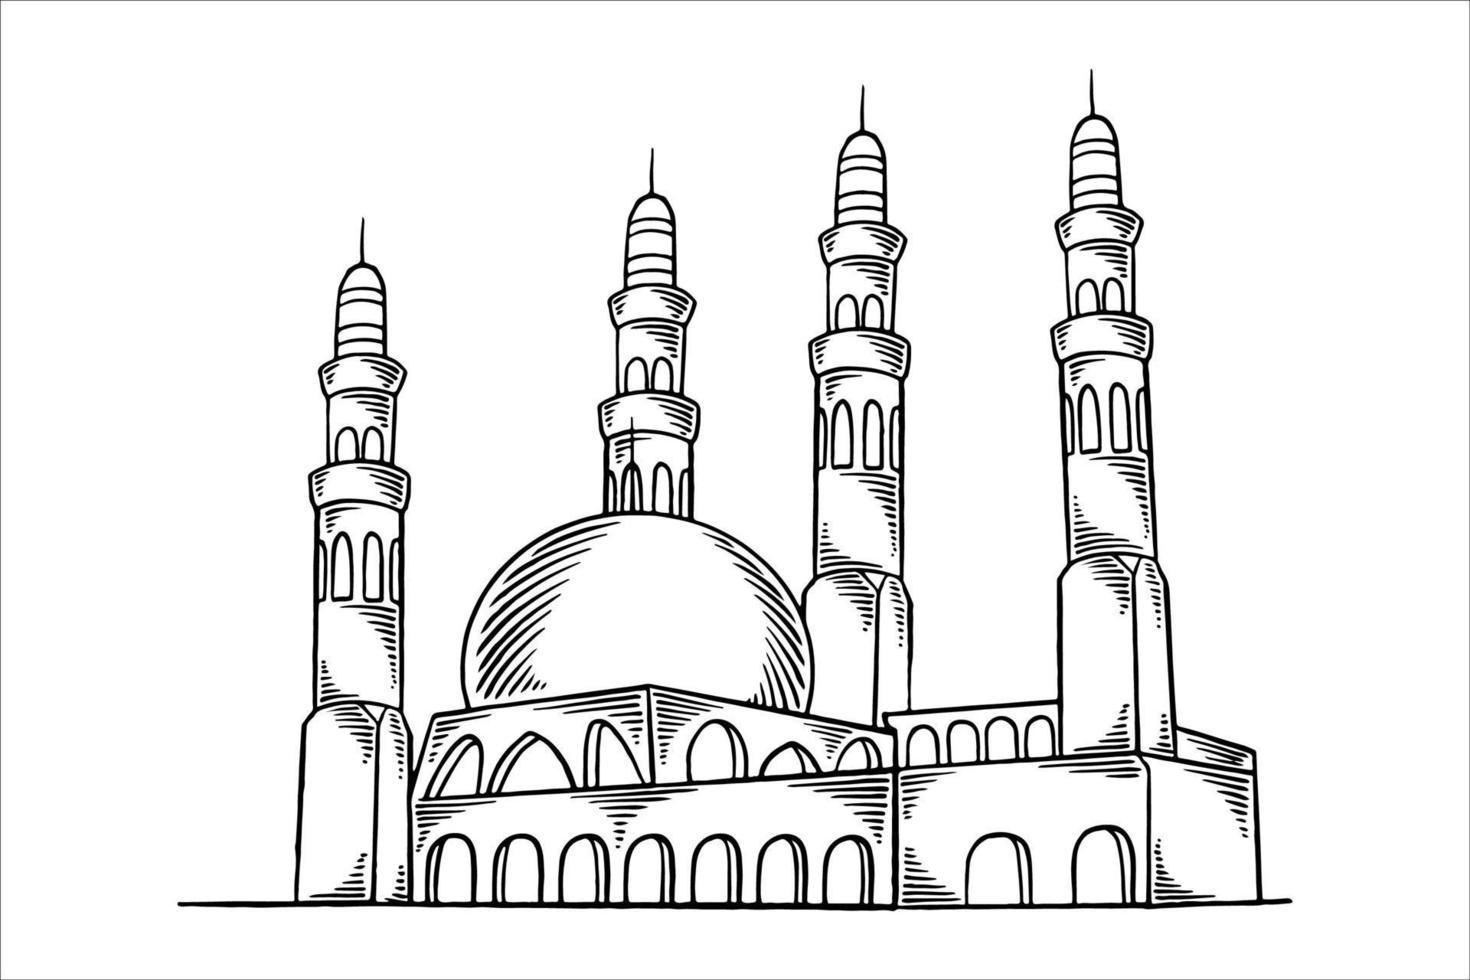 dibujado a mano o boceto de la gran mezquita para elementos islámicos de ramadán. vector